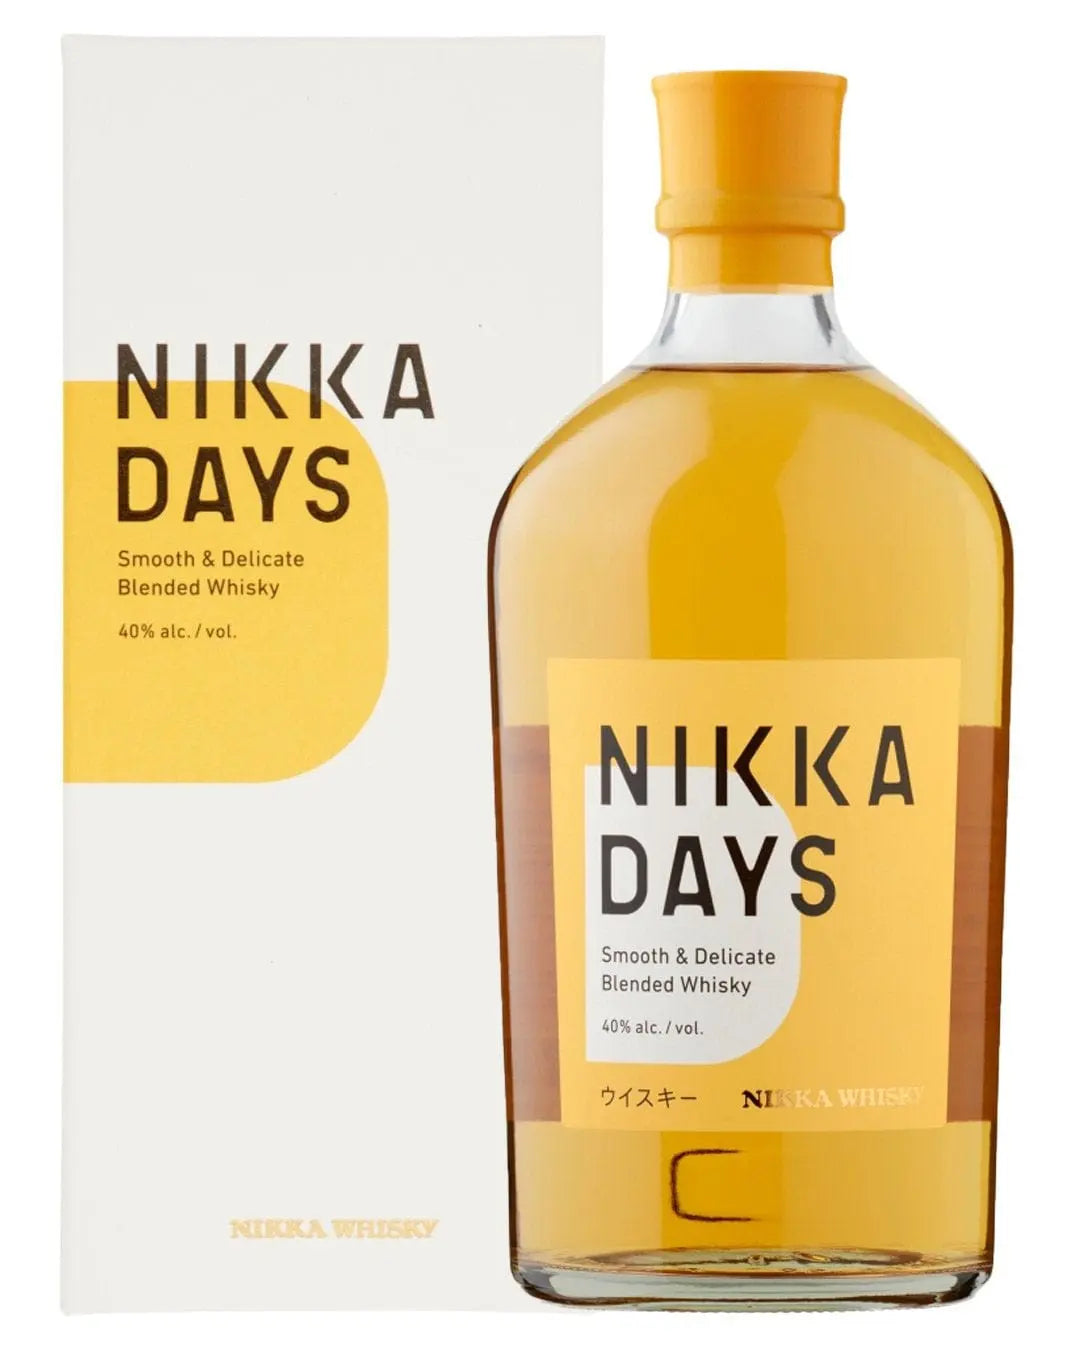 Nikka Days Japanese Blended Whisky, 70 cl Whisky